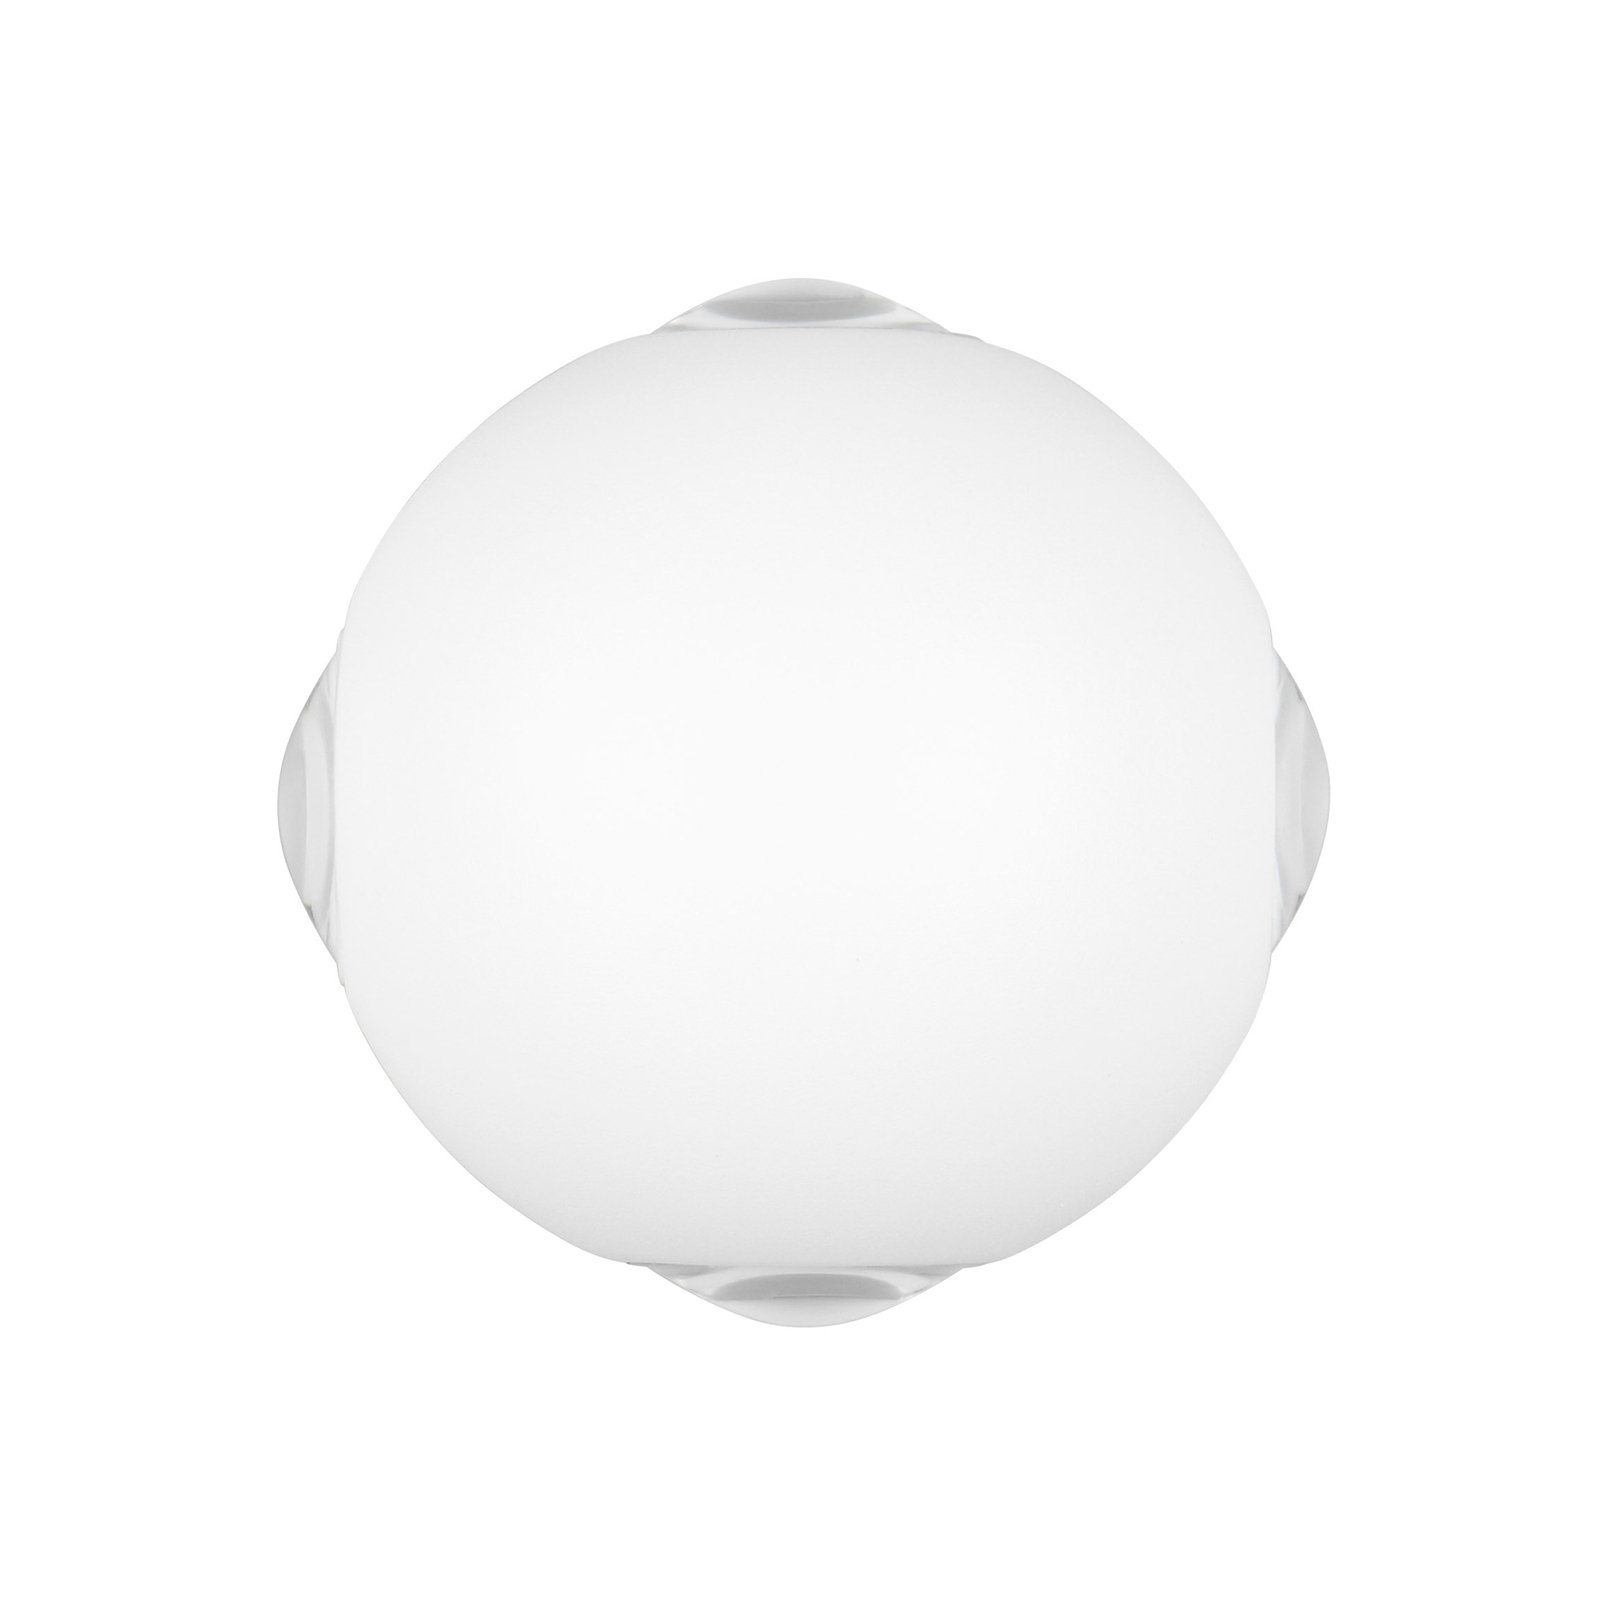 Applique d'extérieur LED Avisio, blanc mat, à 4 lampes, semi-circulaire